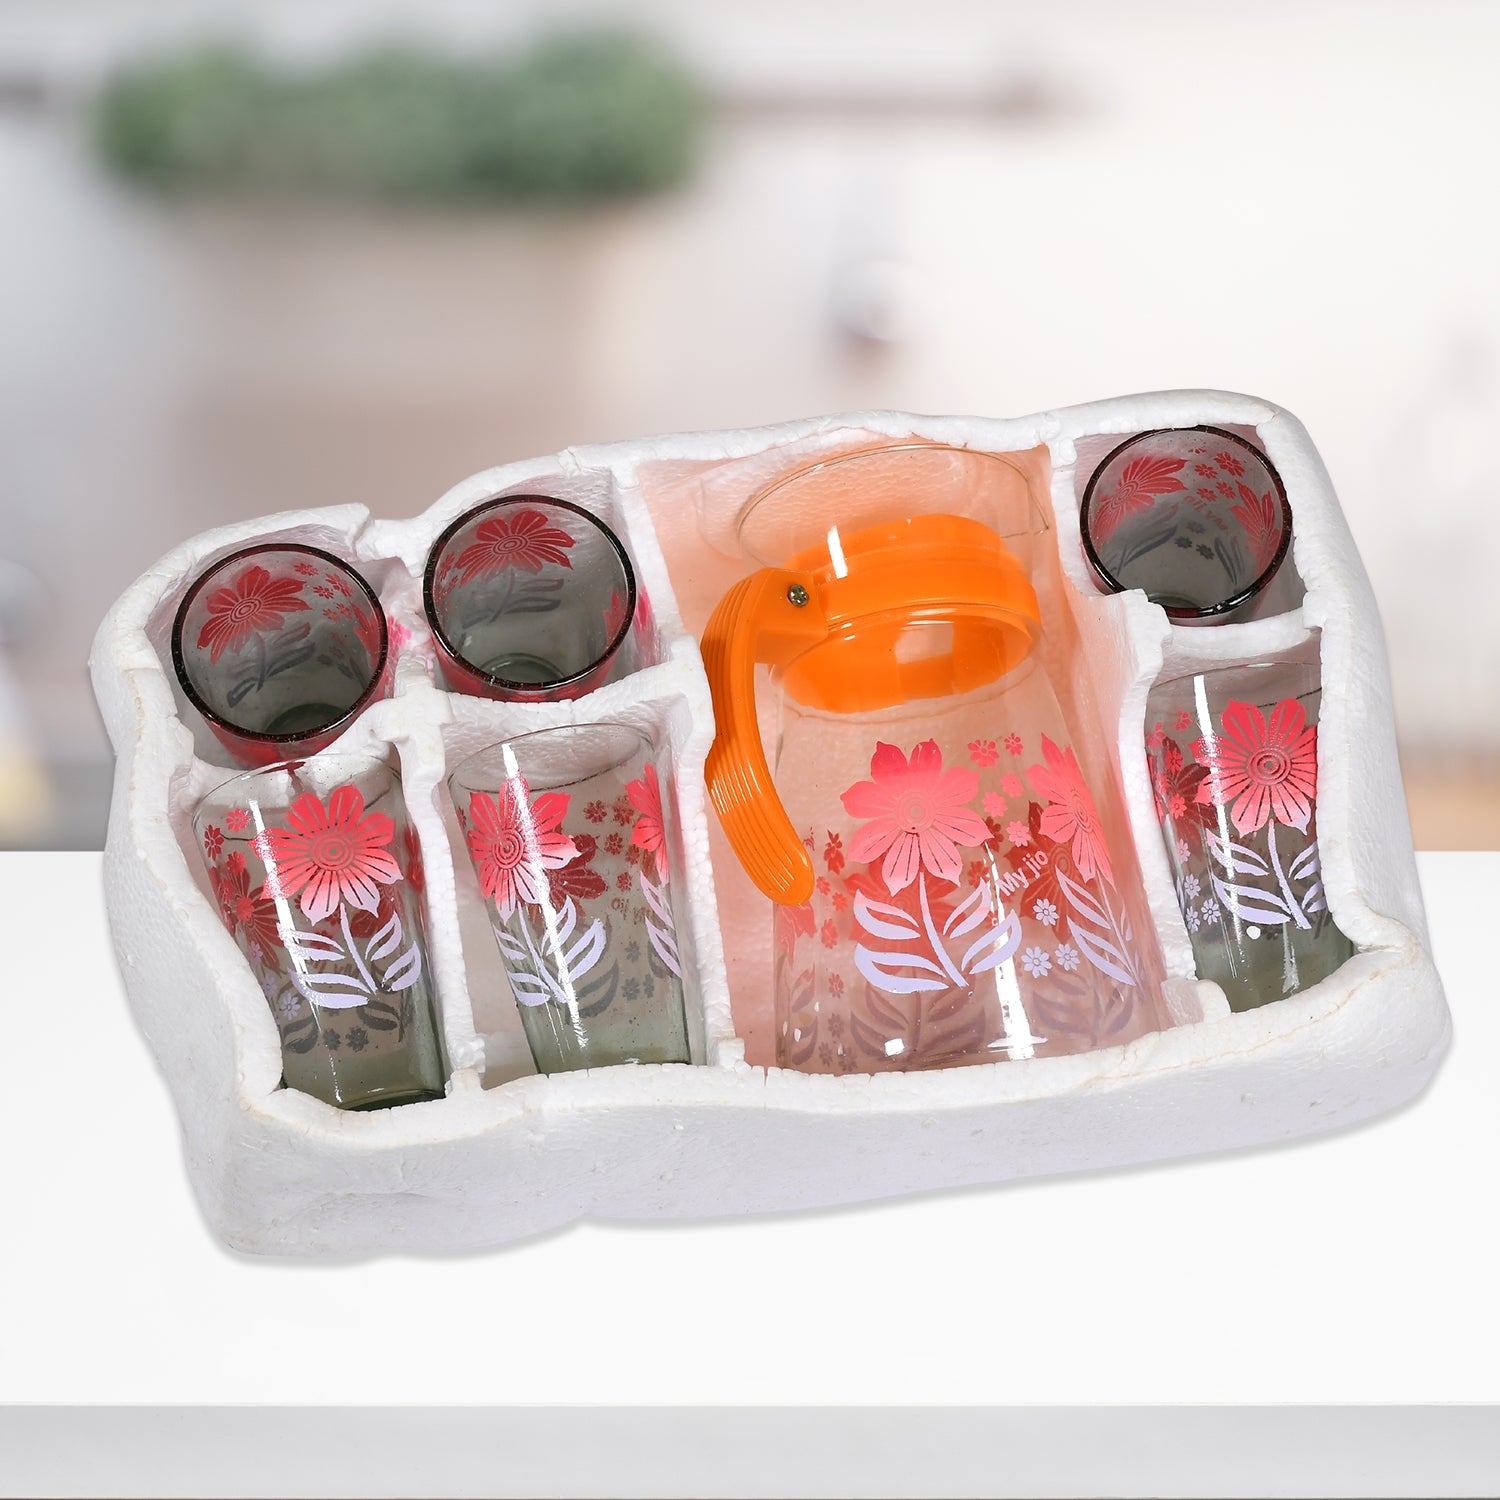 5279 Drinkware Water Jug & Glass Crystal Glass Juice Set | 1 Jug (1L) & Set of 6 Glasses Set For Home Use